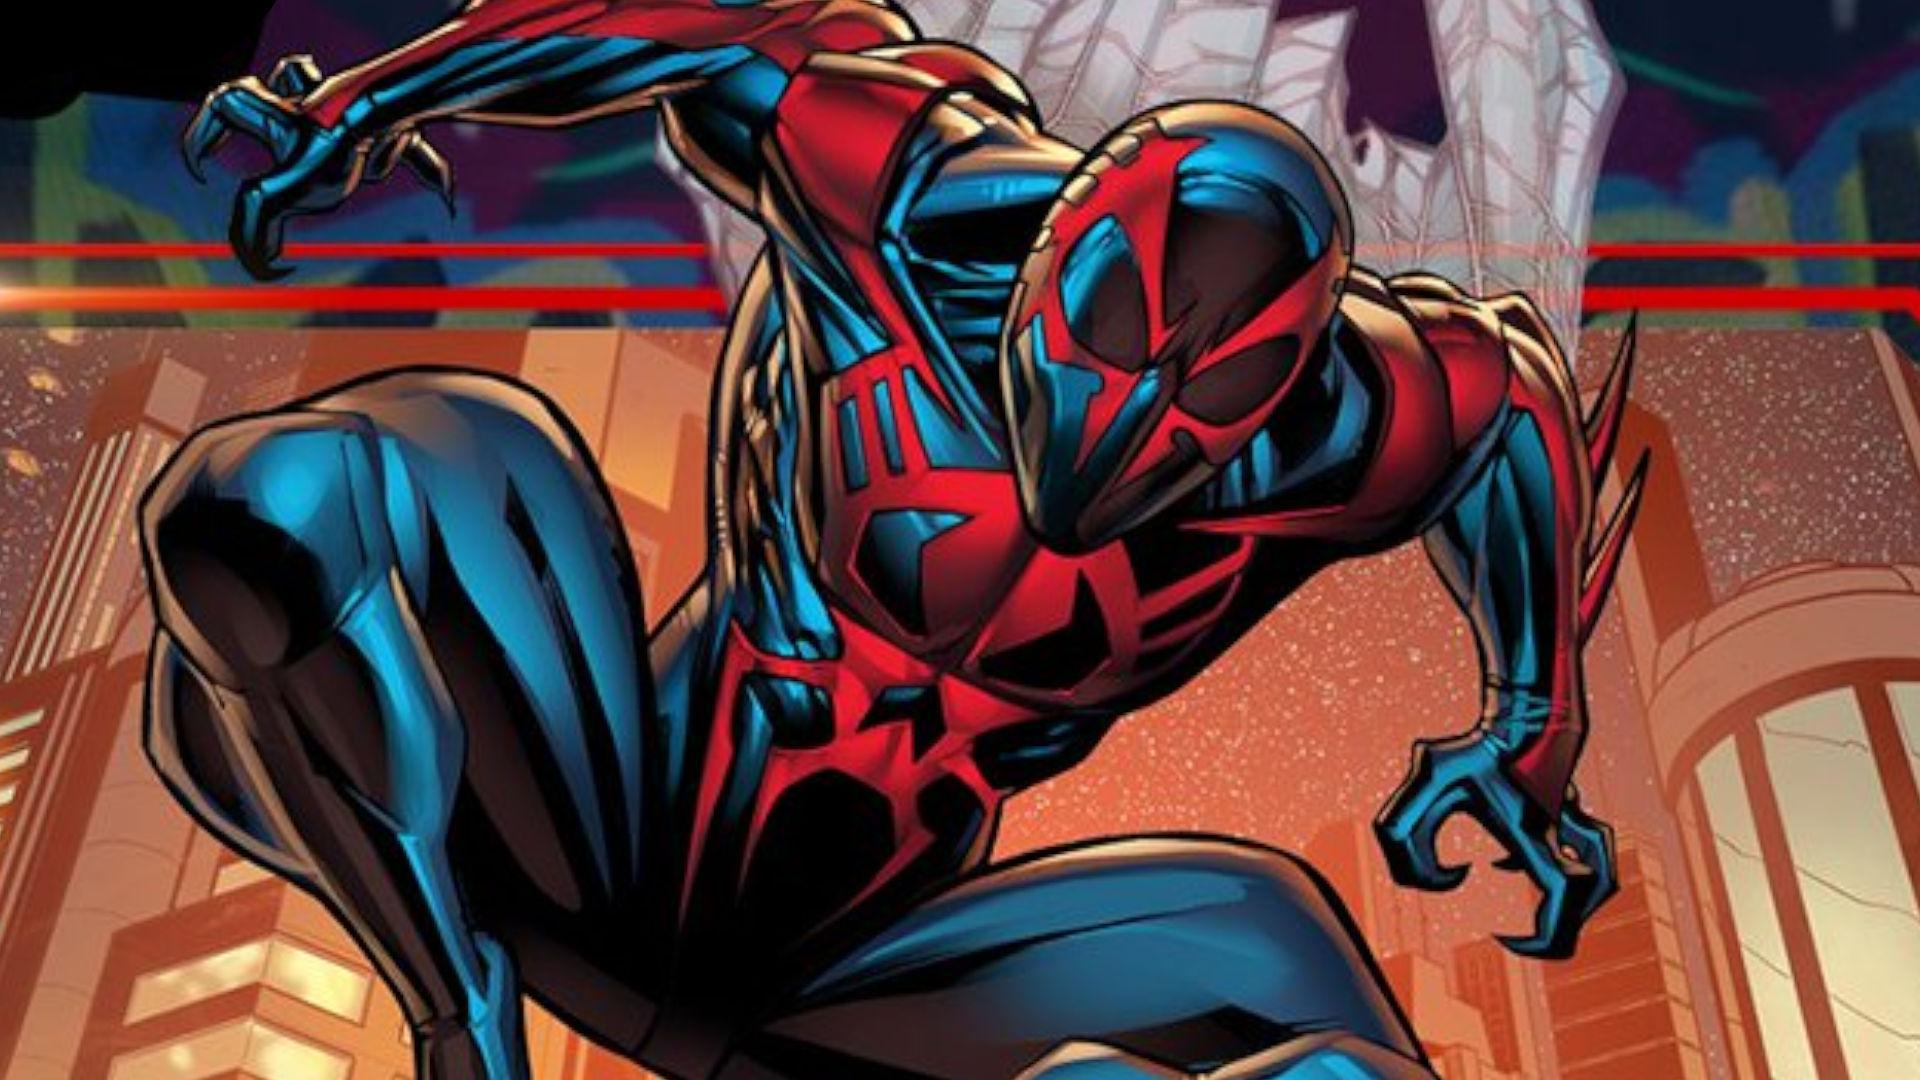 Marvel Spider-Man Spider-Man 2099